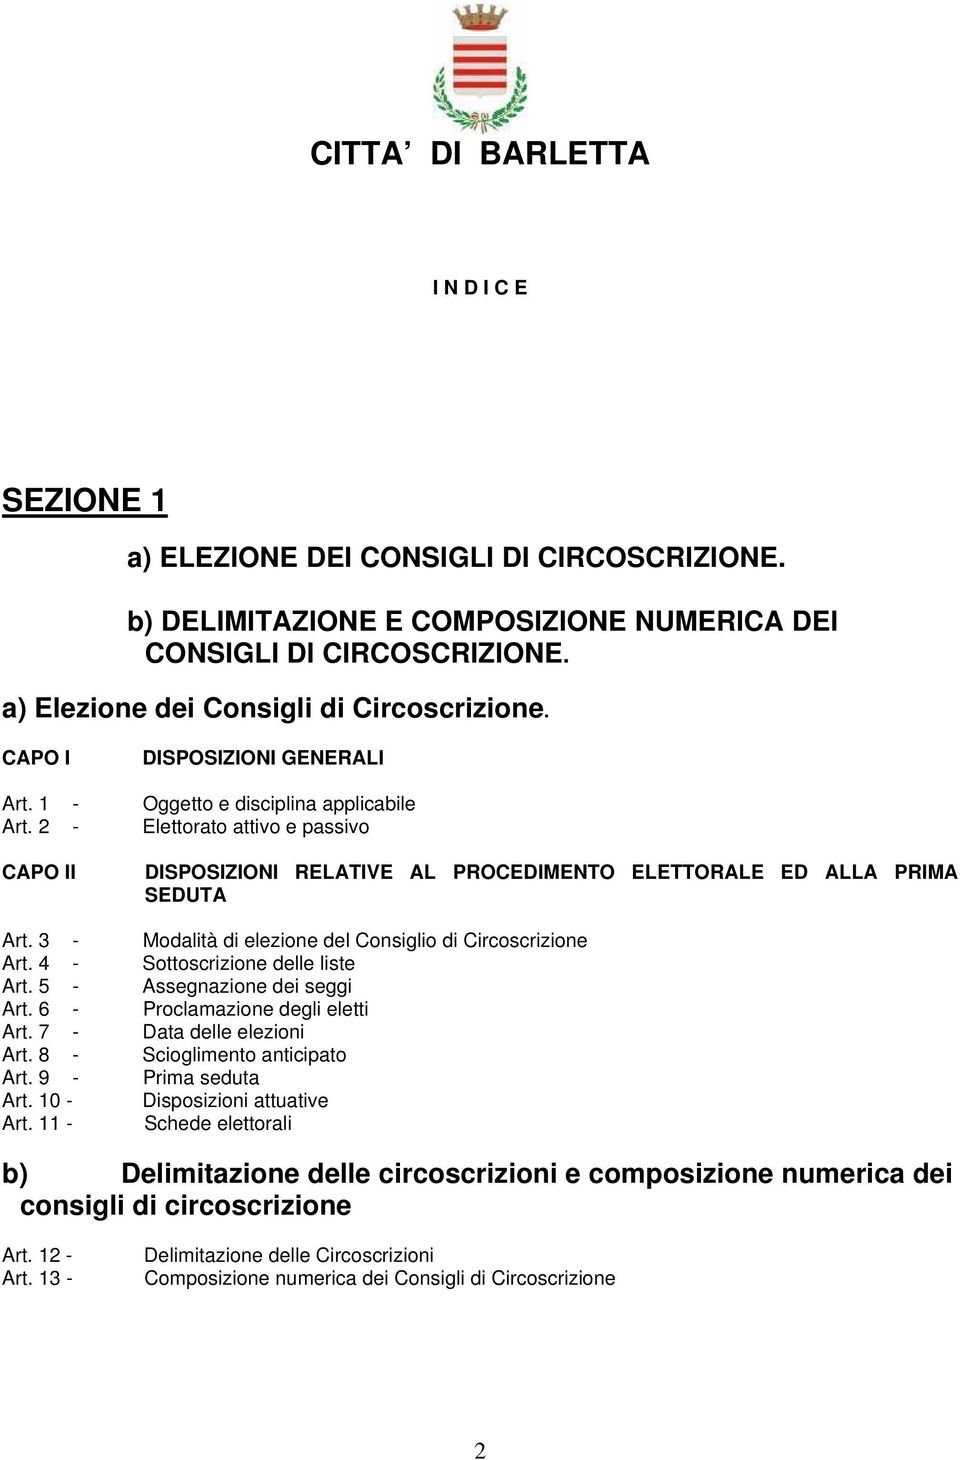 3 - Modalità di elezione del Consiglio di Circoscrizione Art. 4 - Sottoscrizione delle liste Art. 5 - Assegnazione dei seggi Art. 6 - Proclamazione degli eletti Art. 7 - Data delle elezioni Art.